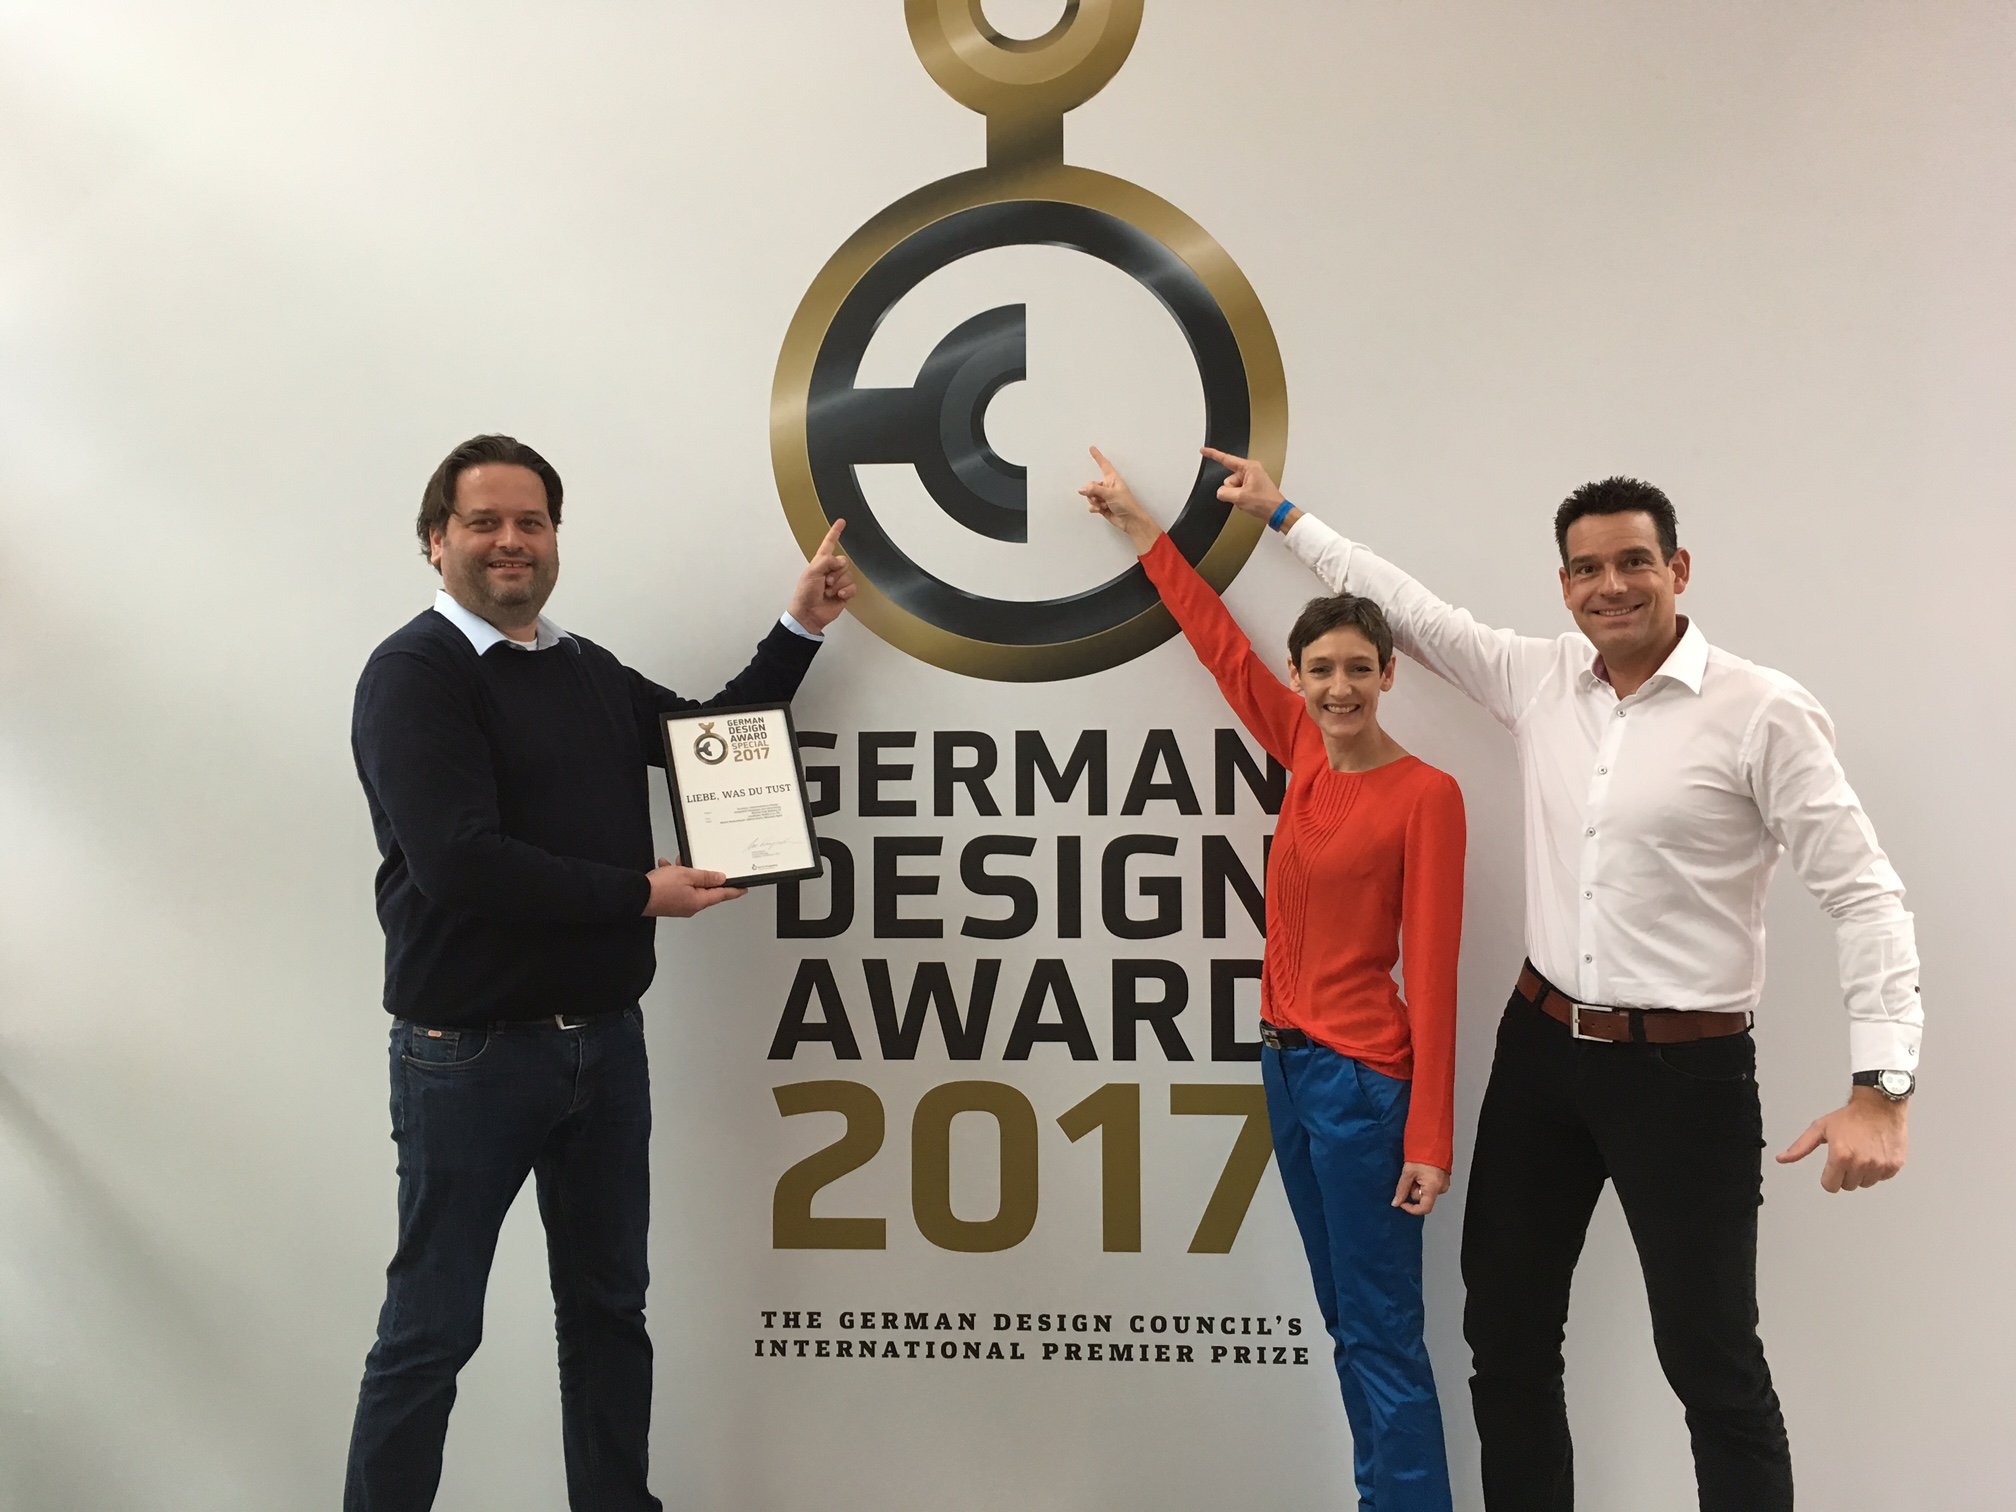 Method Park gewinnt German Design Award 2017